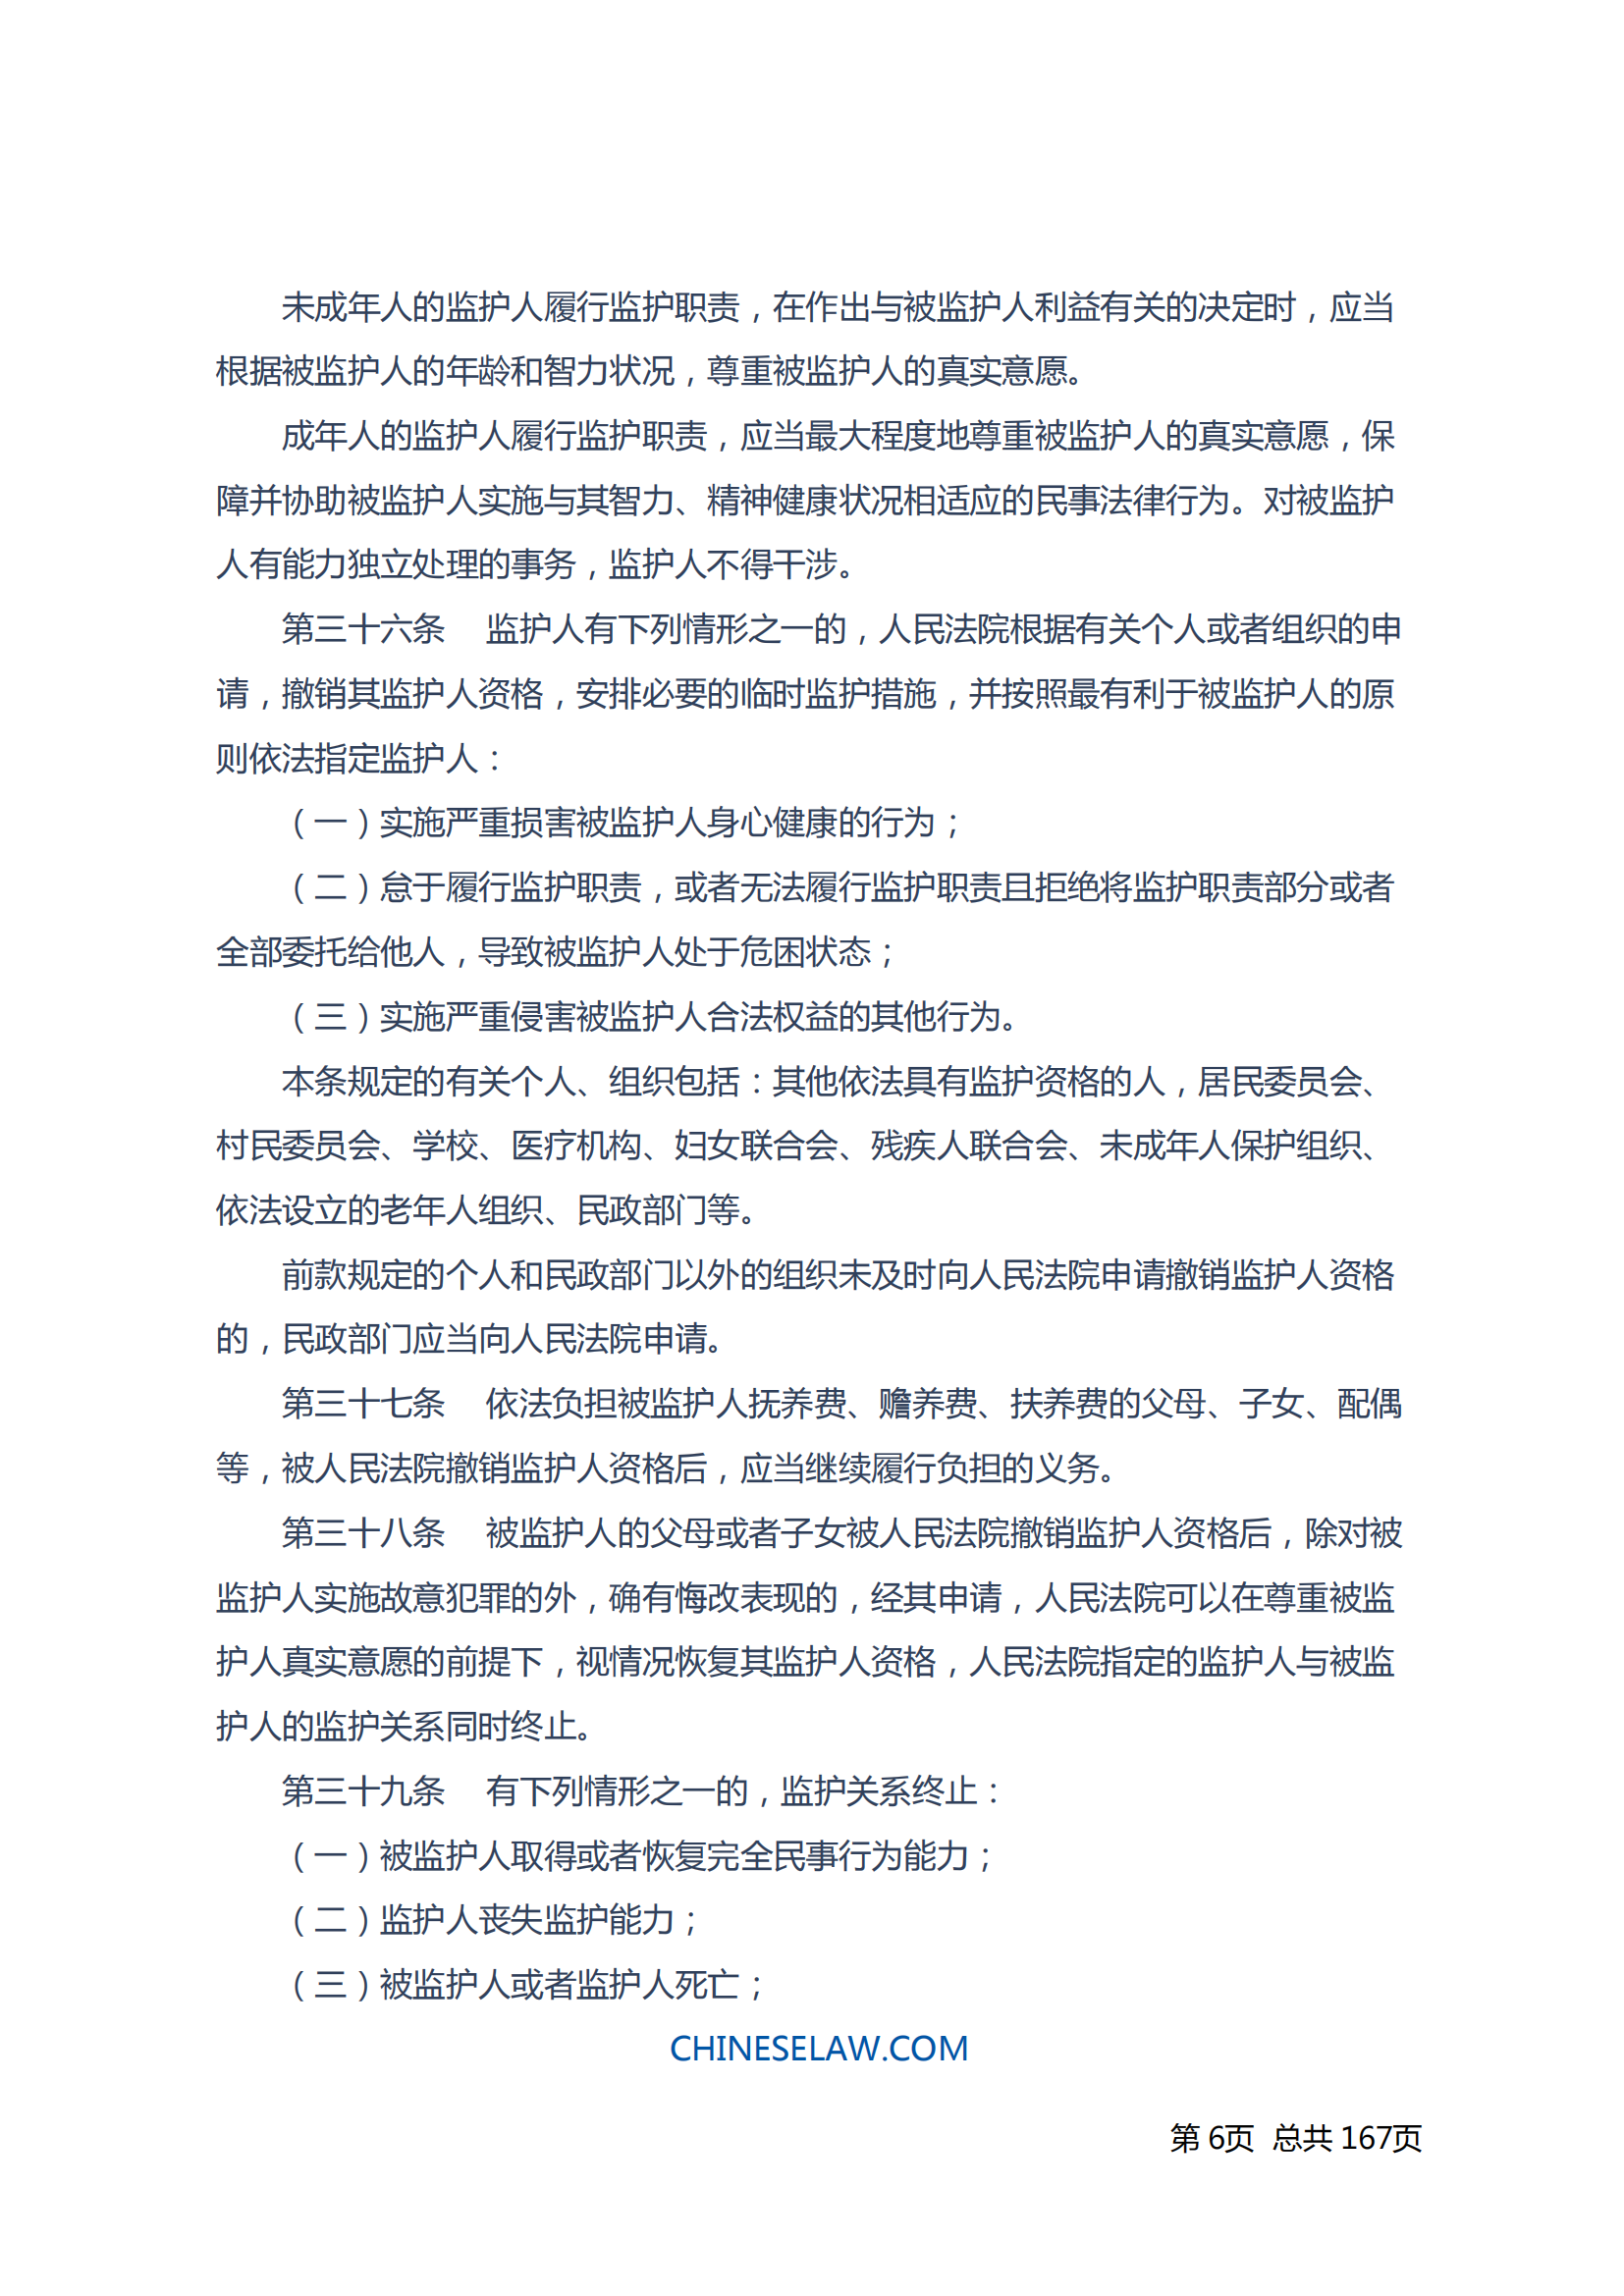 中华人民共和国民法典_05